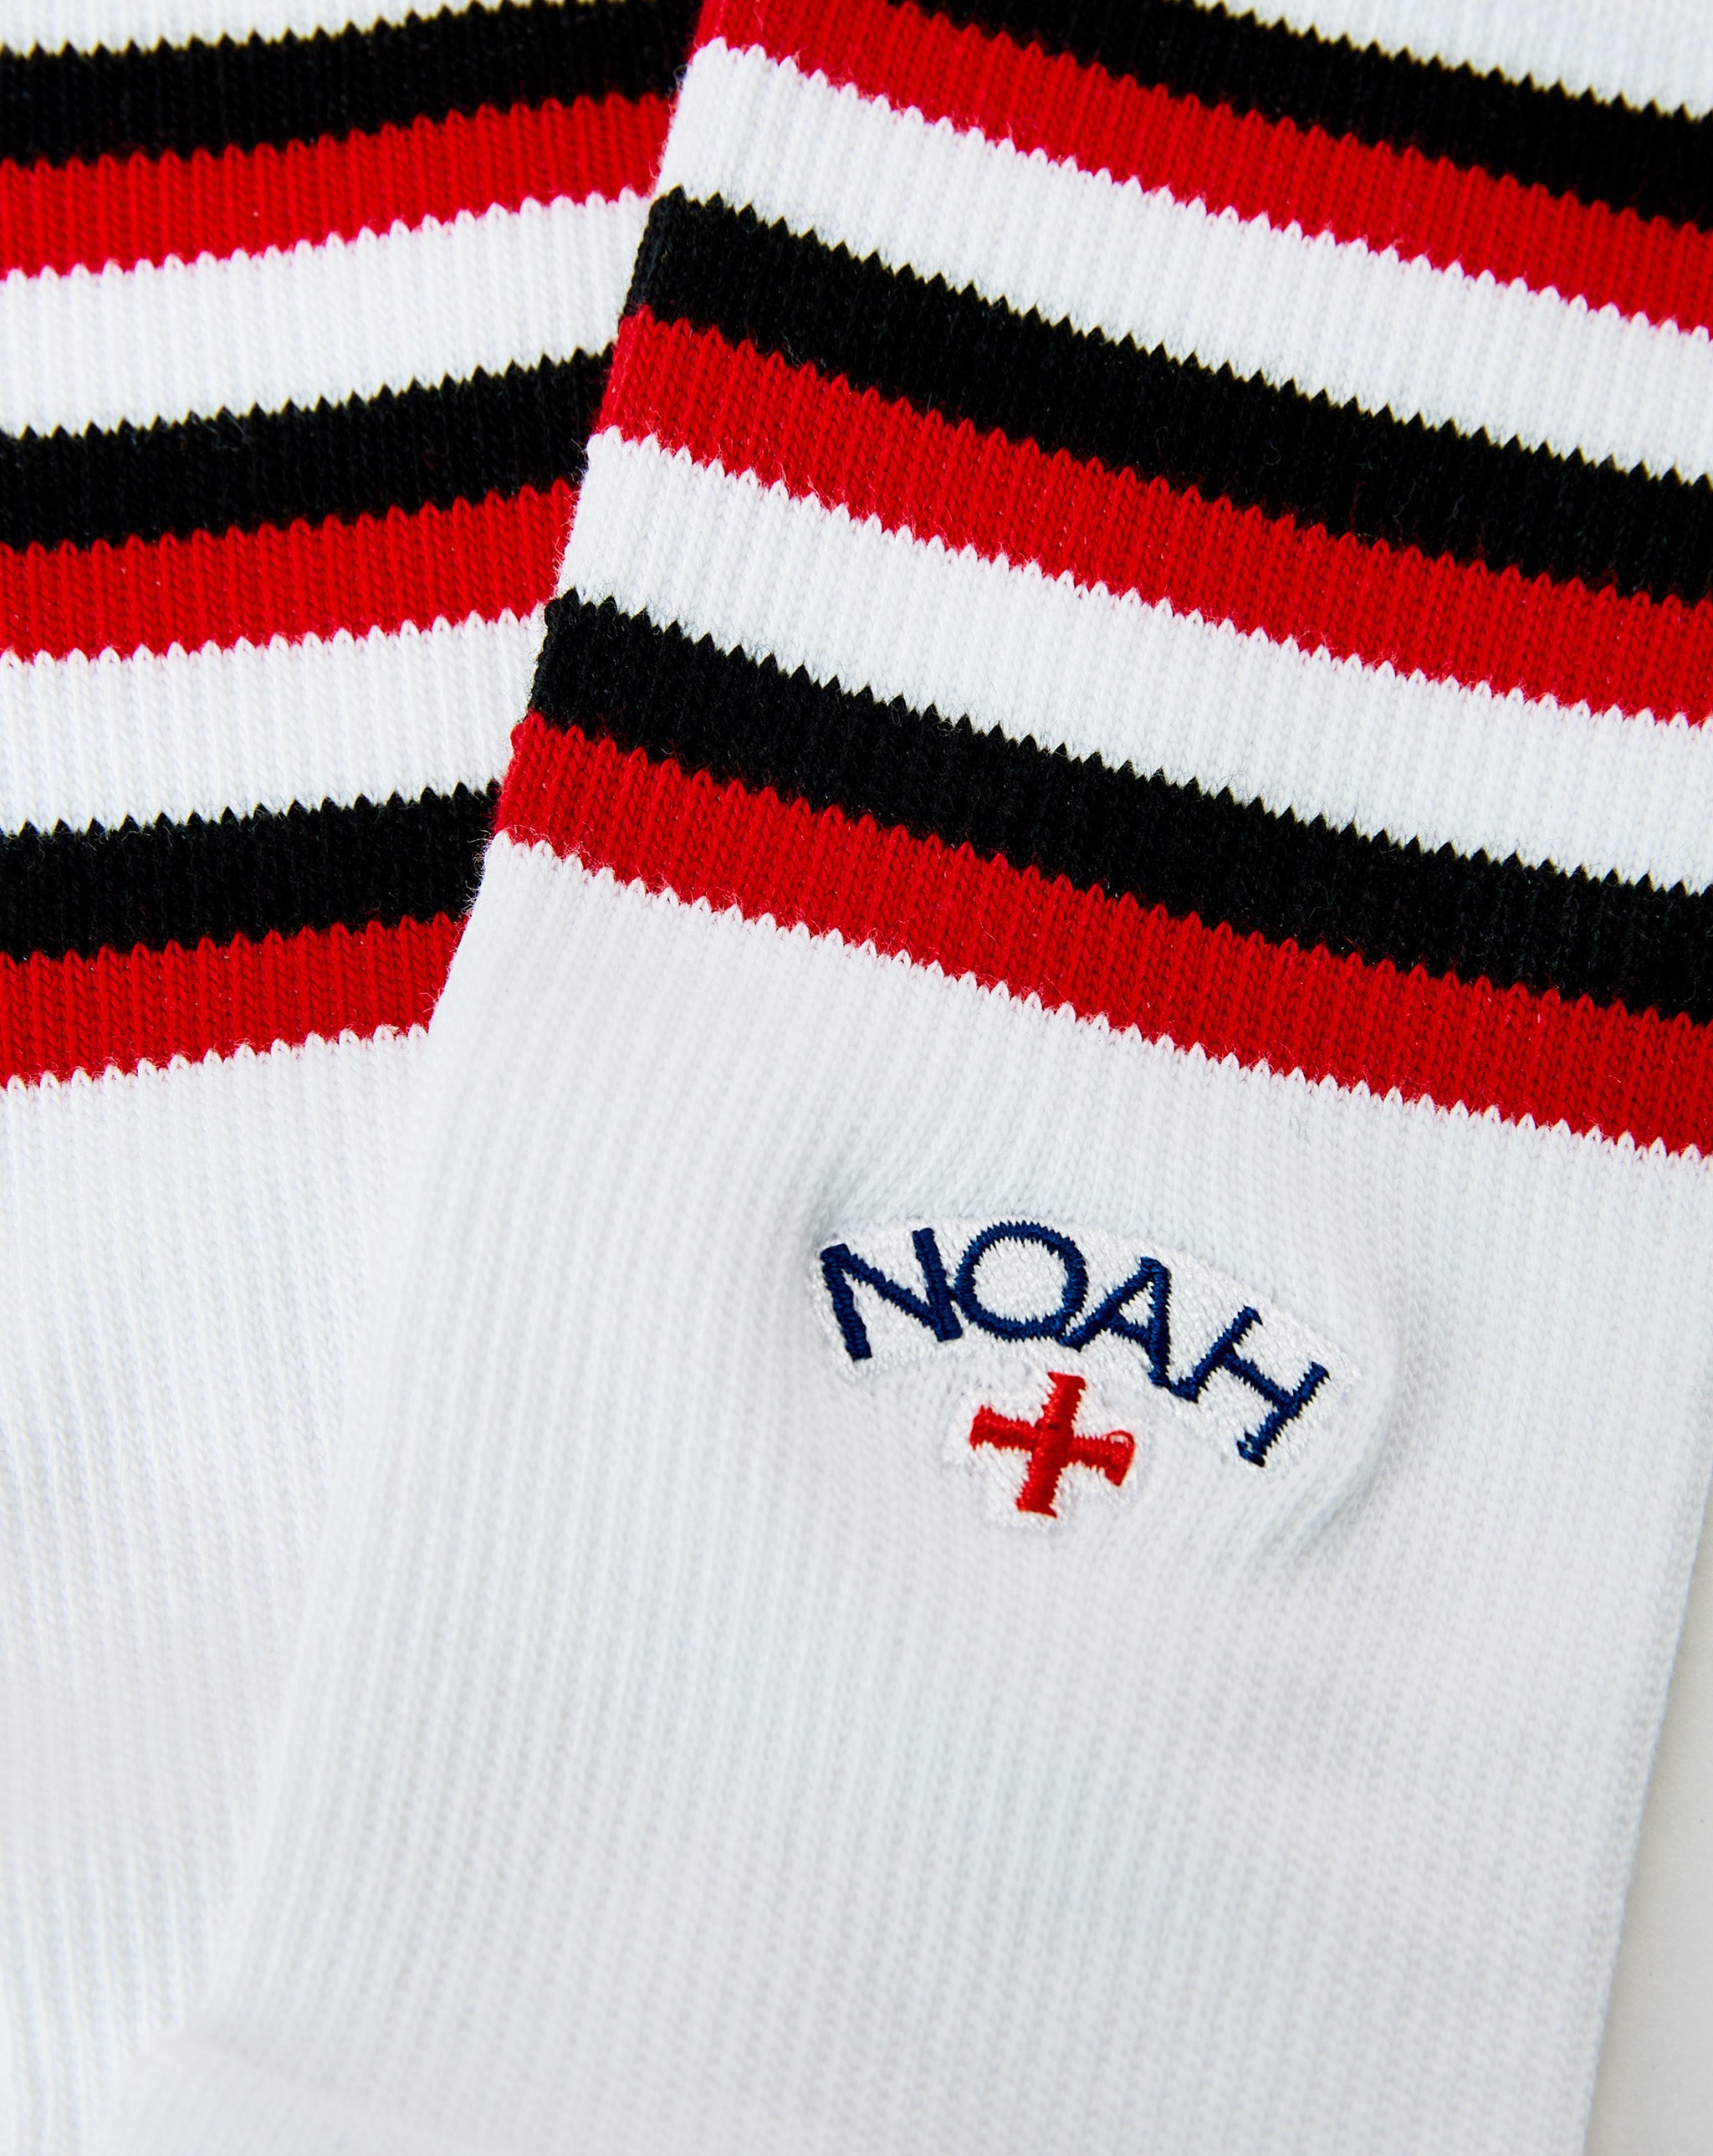 Noah Striped Socks  - Cheap 127-0 Jordan outlet